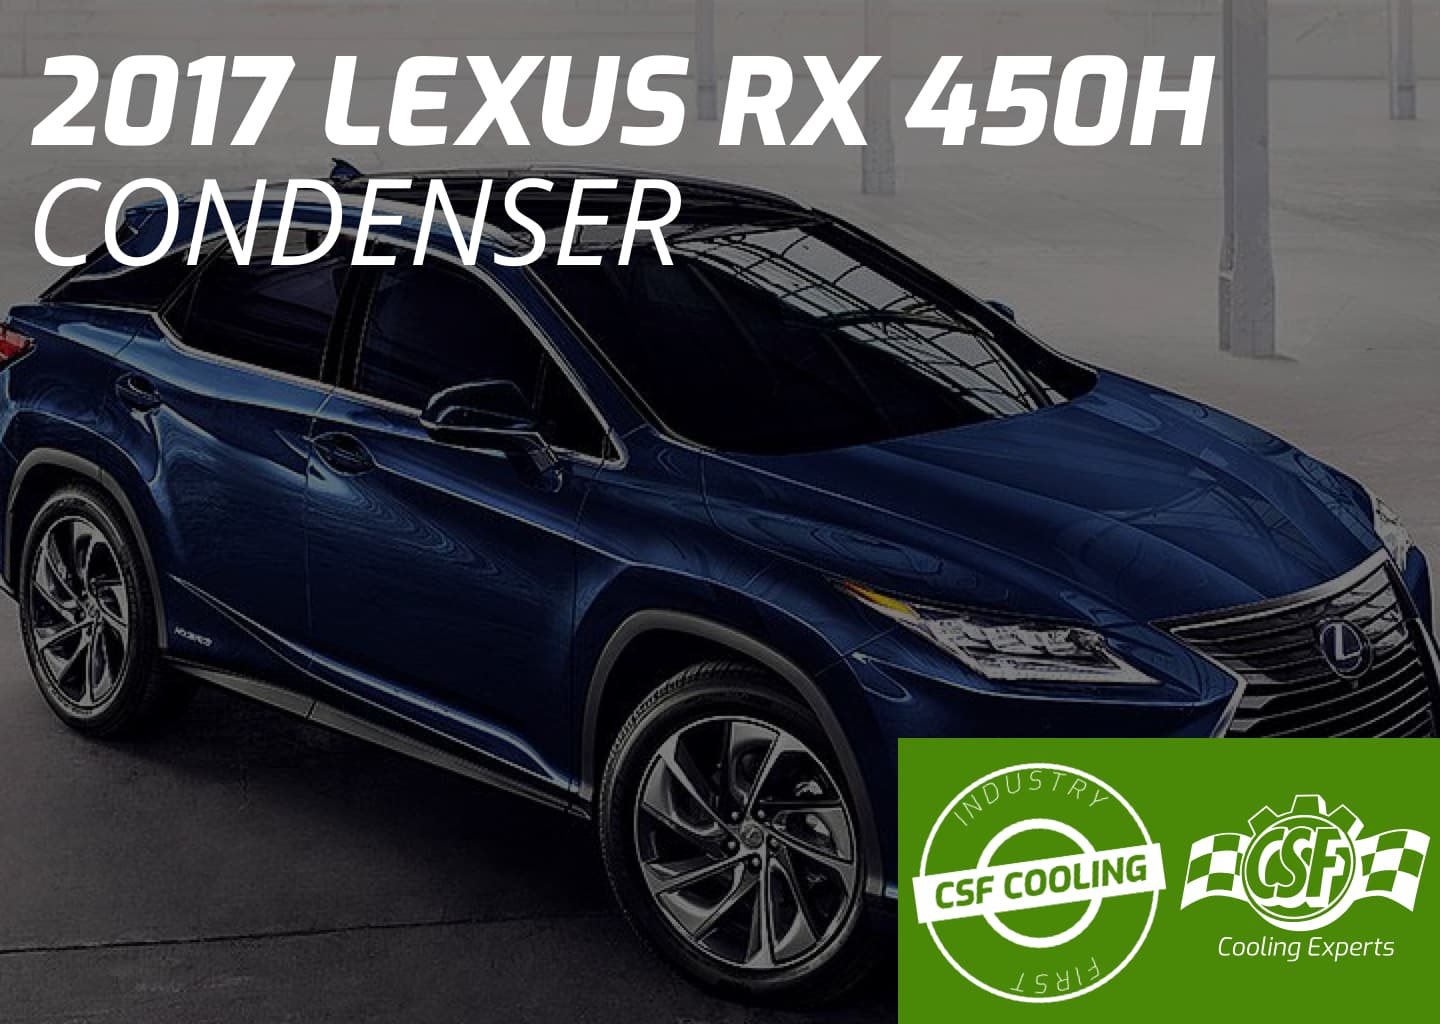 2017 Lexus RX450h Condenser